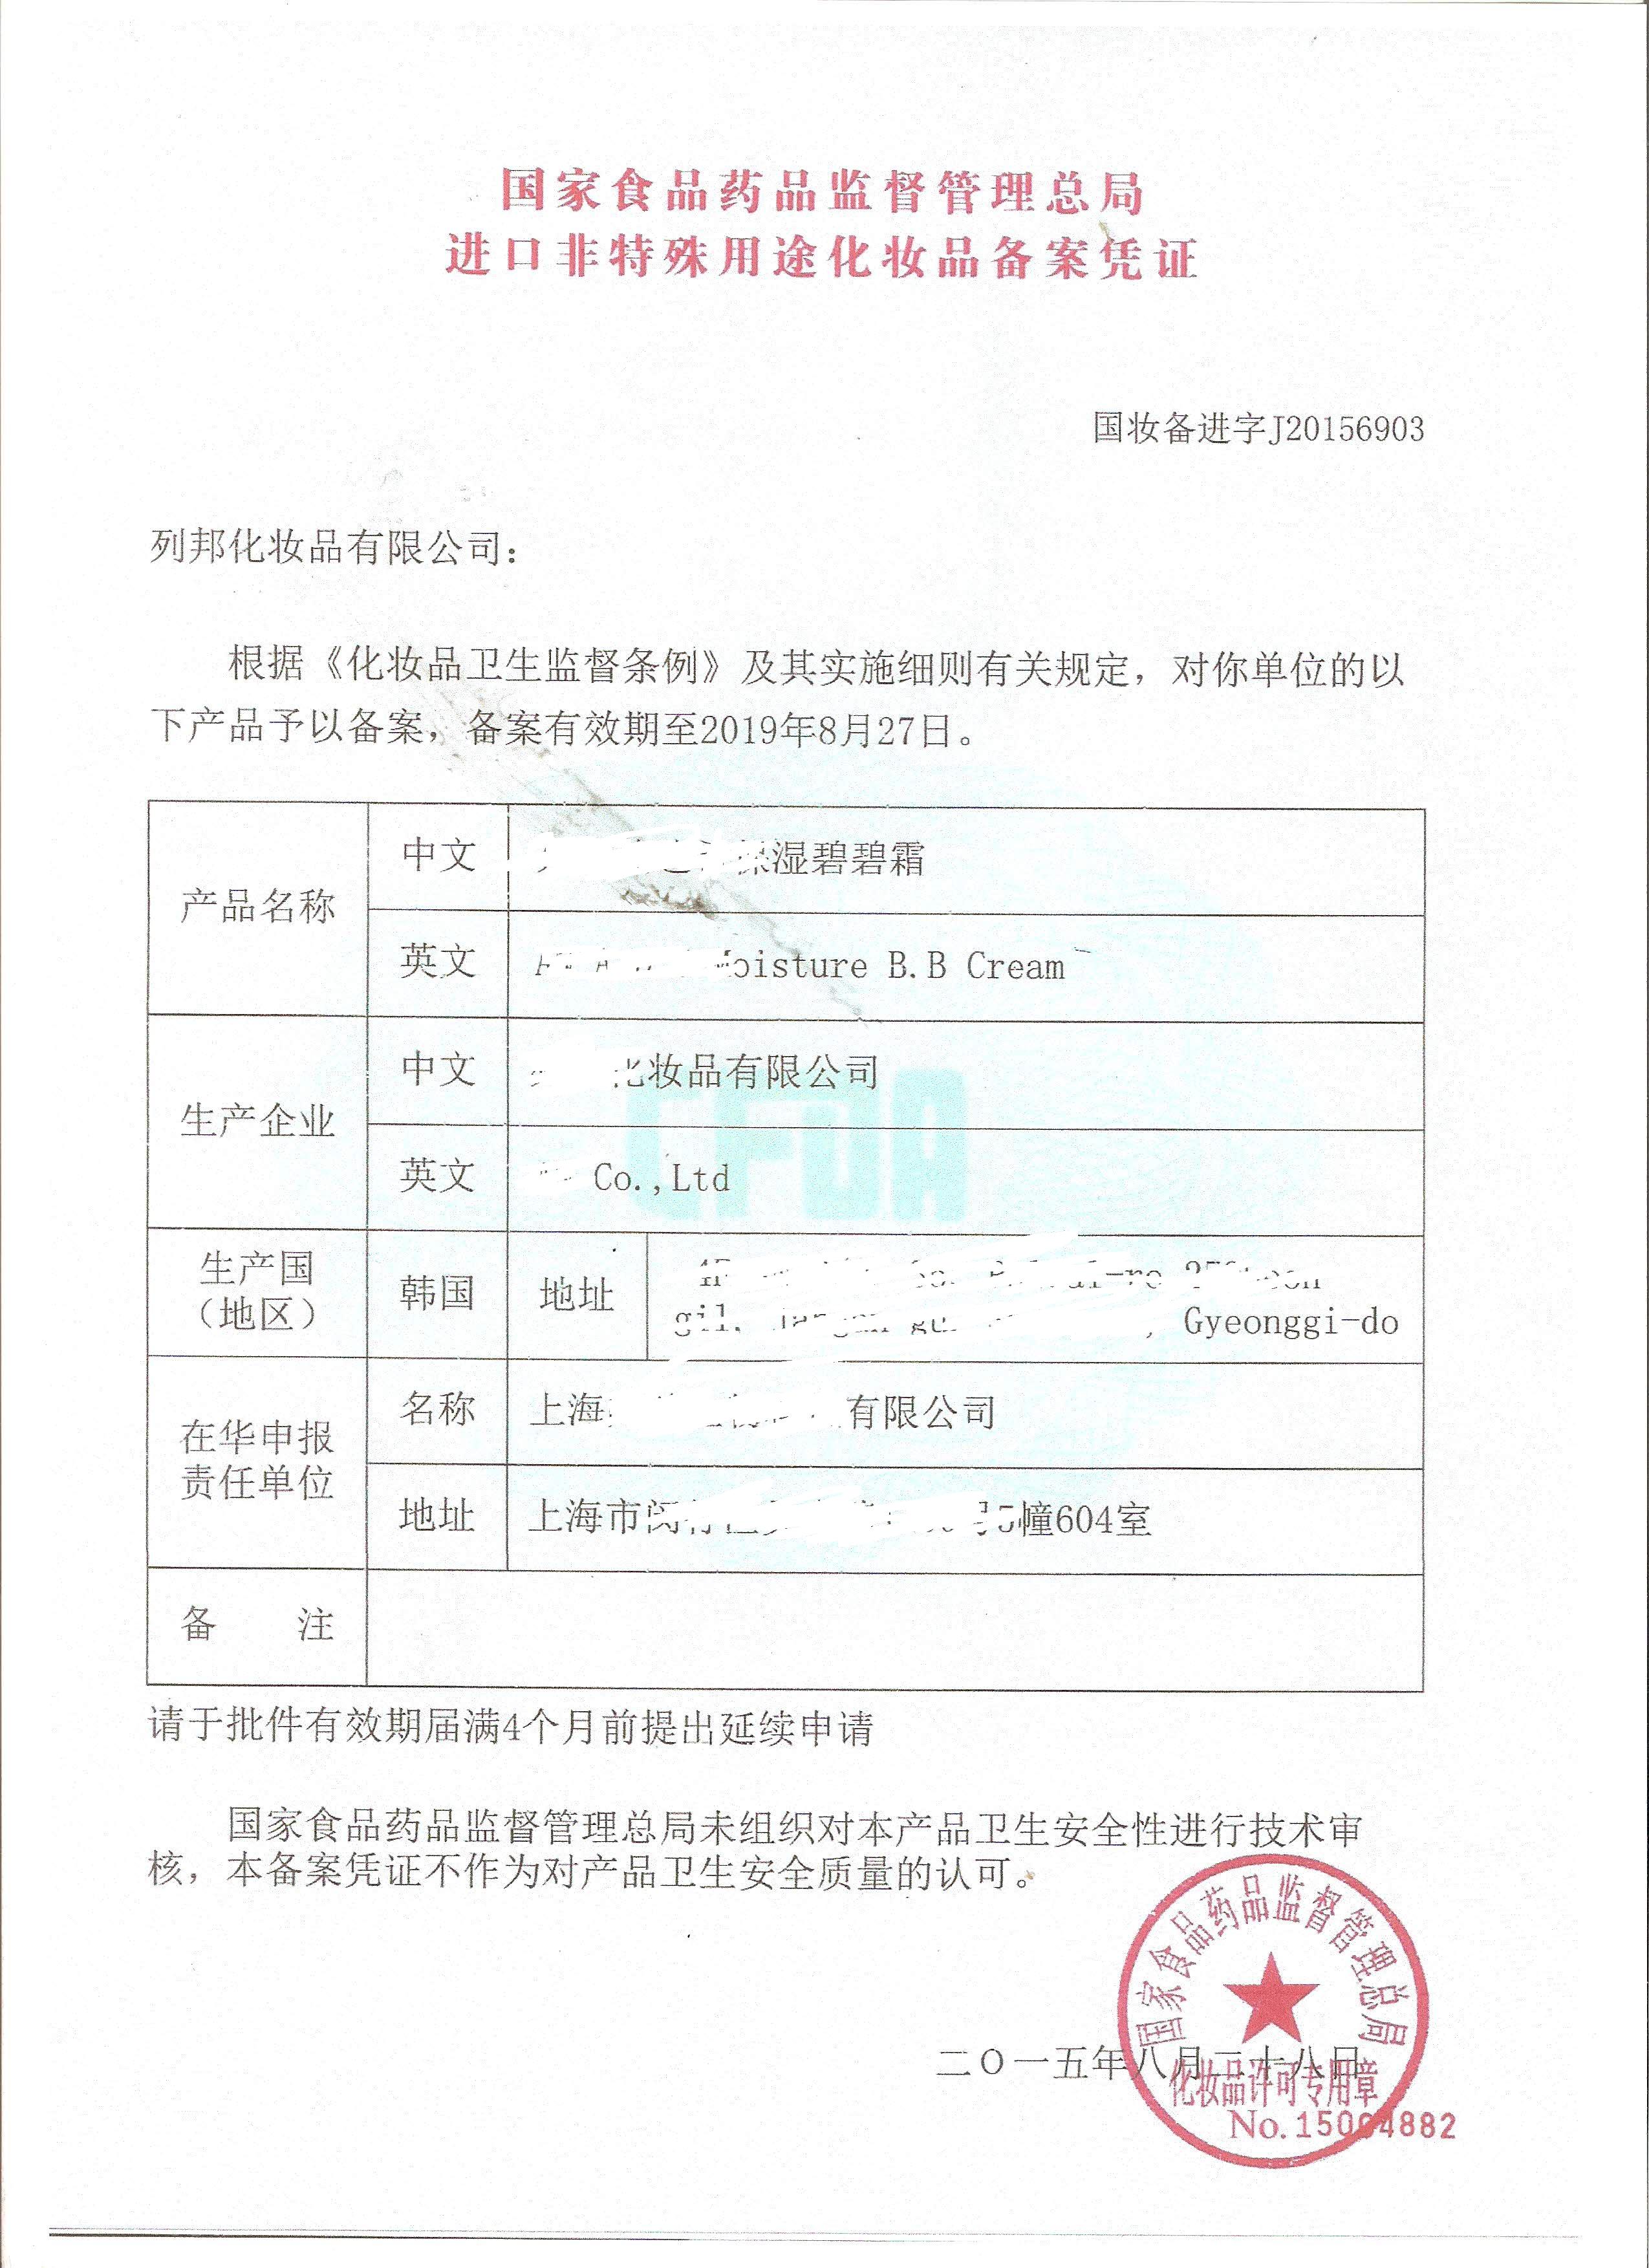 北京进口货物办理信用证